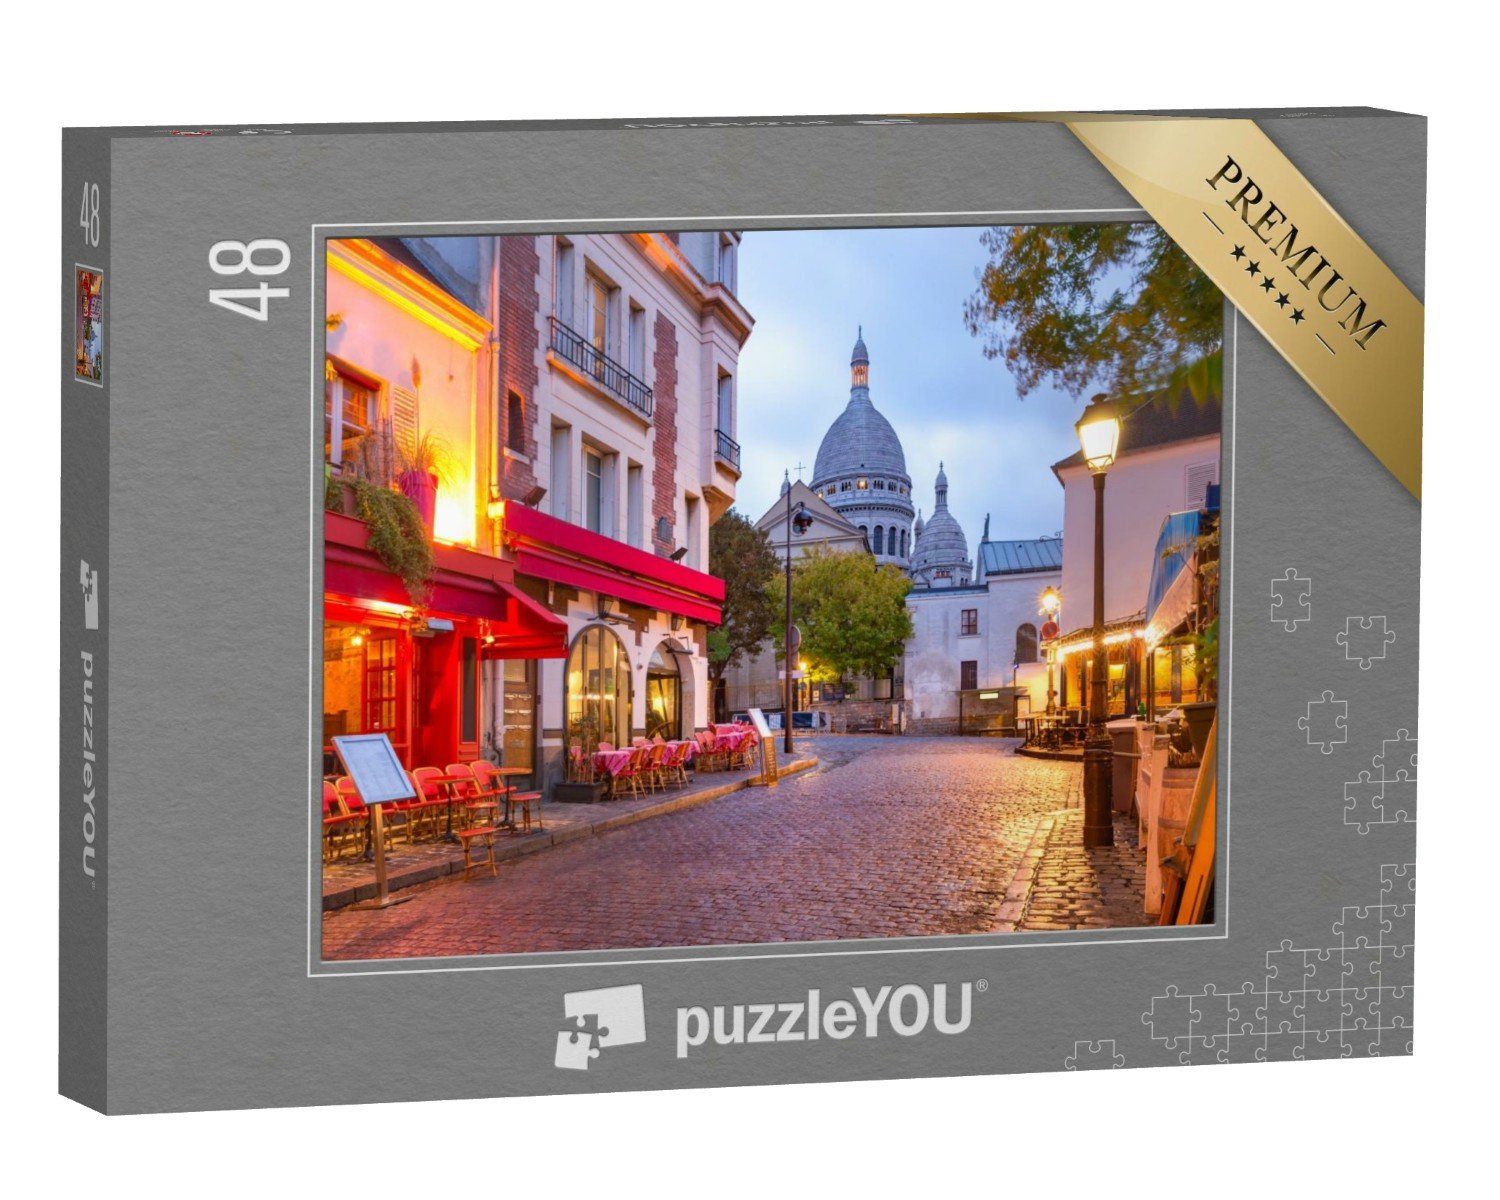 du Puzzleteile, Paris, Place Europa Morgen, Sacre-Coeur mit puzzleYOU-Kollektionen 48 am puzzleYOU Puzzle Tertre